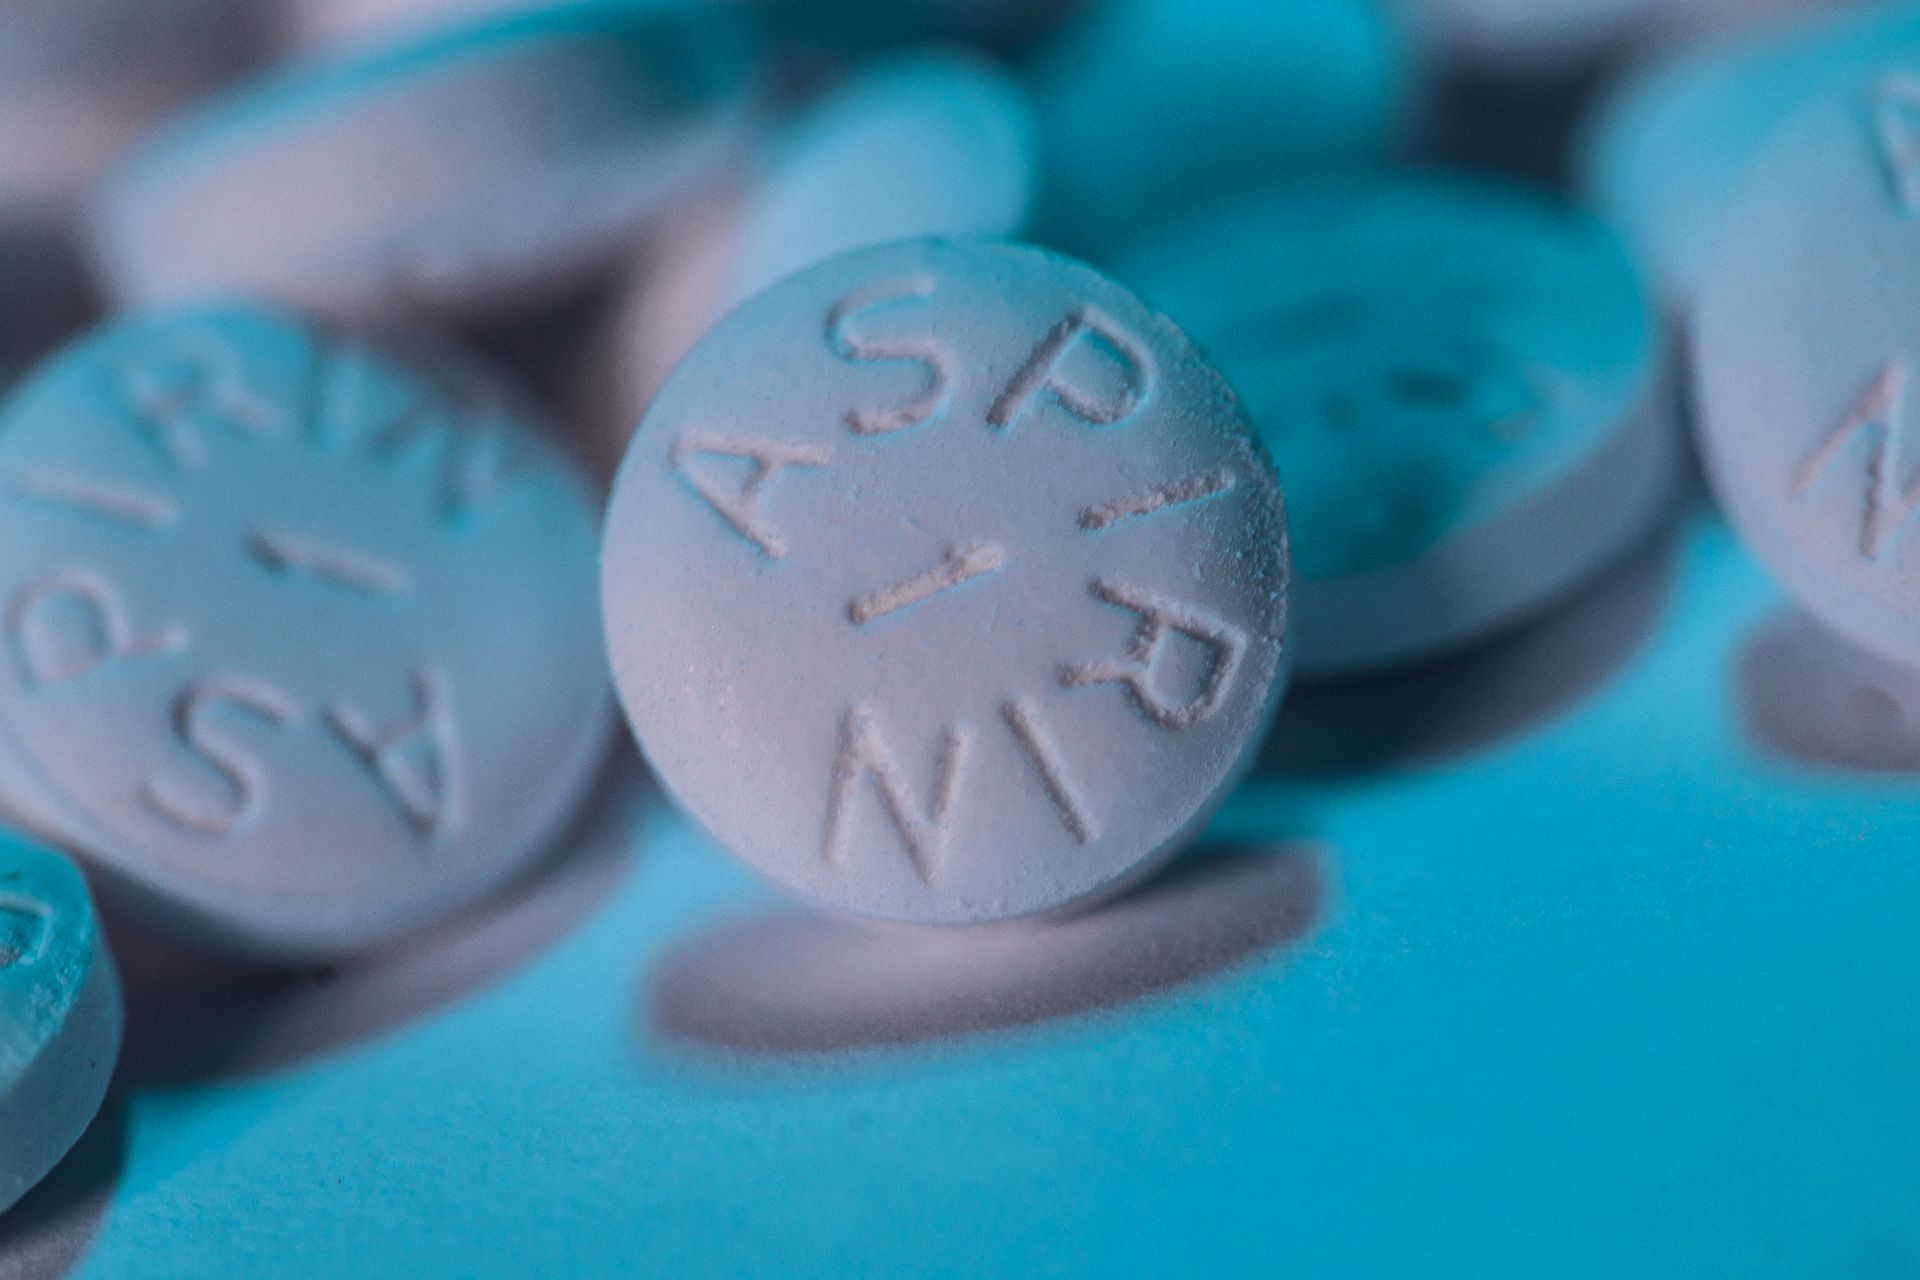 Aspirina în doze mici crește riscul de anemie la vârstnici